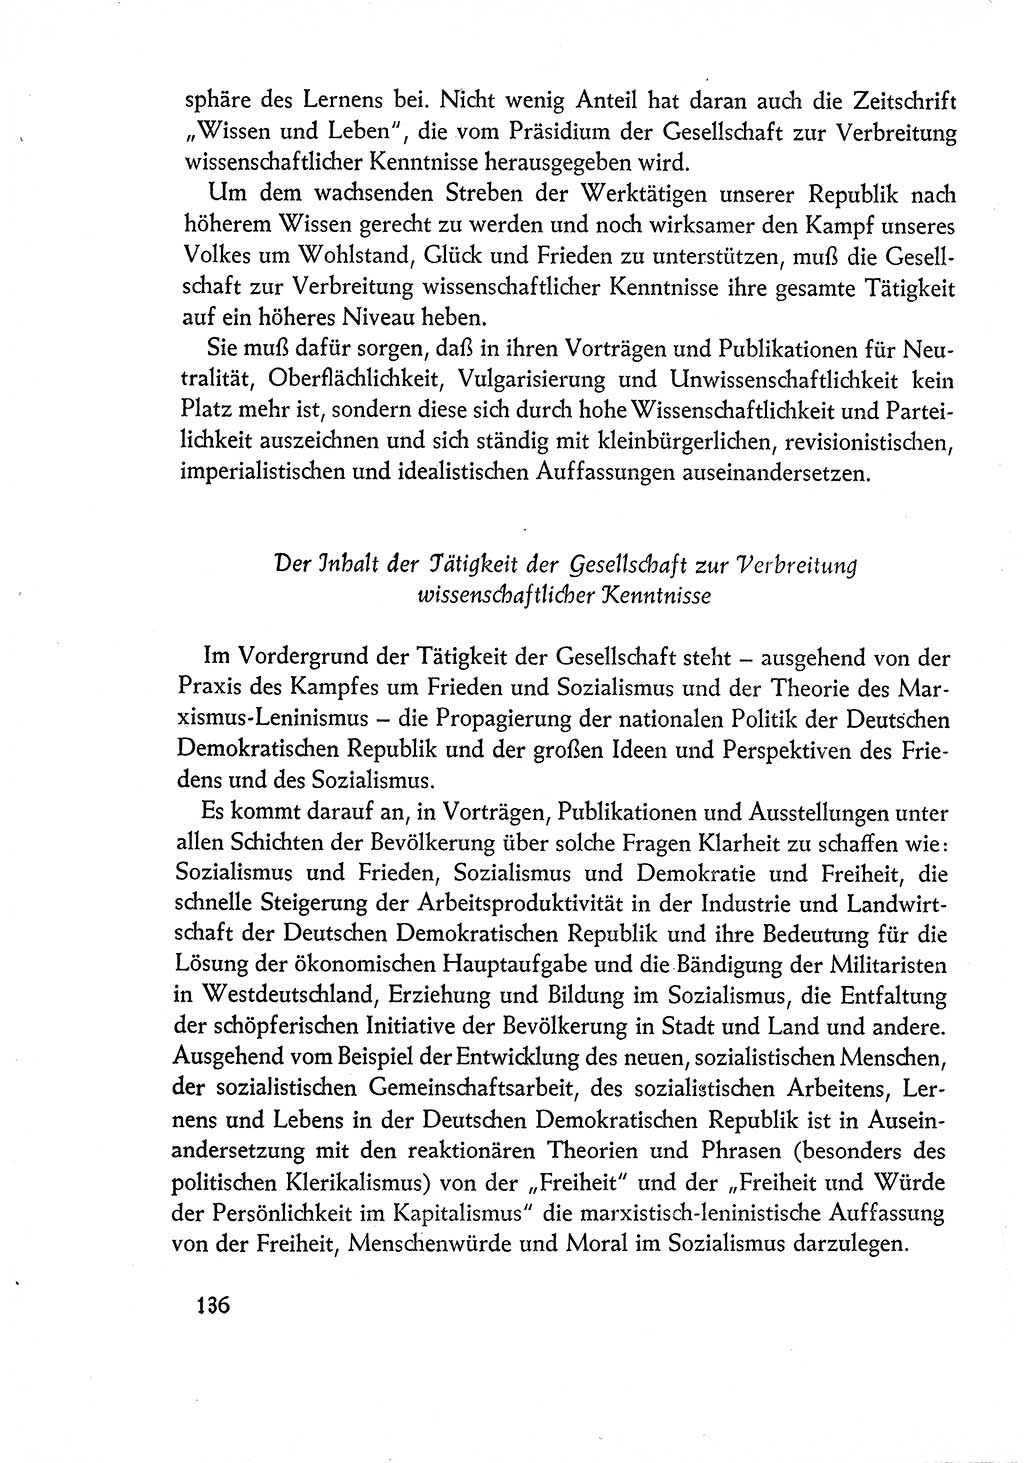 Dokumente der Sozialistischen Einheitspartei Deutschlands (SED) [Deutsche Demokratische Republik (DDR)] 1960-1961, Seite 136 (Dok. SED DDR 1960-1961, S. 136)